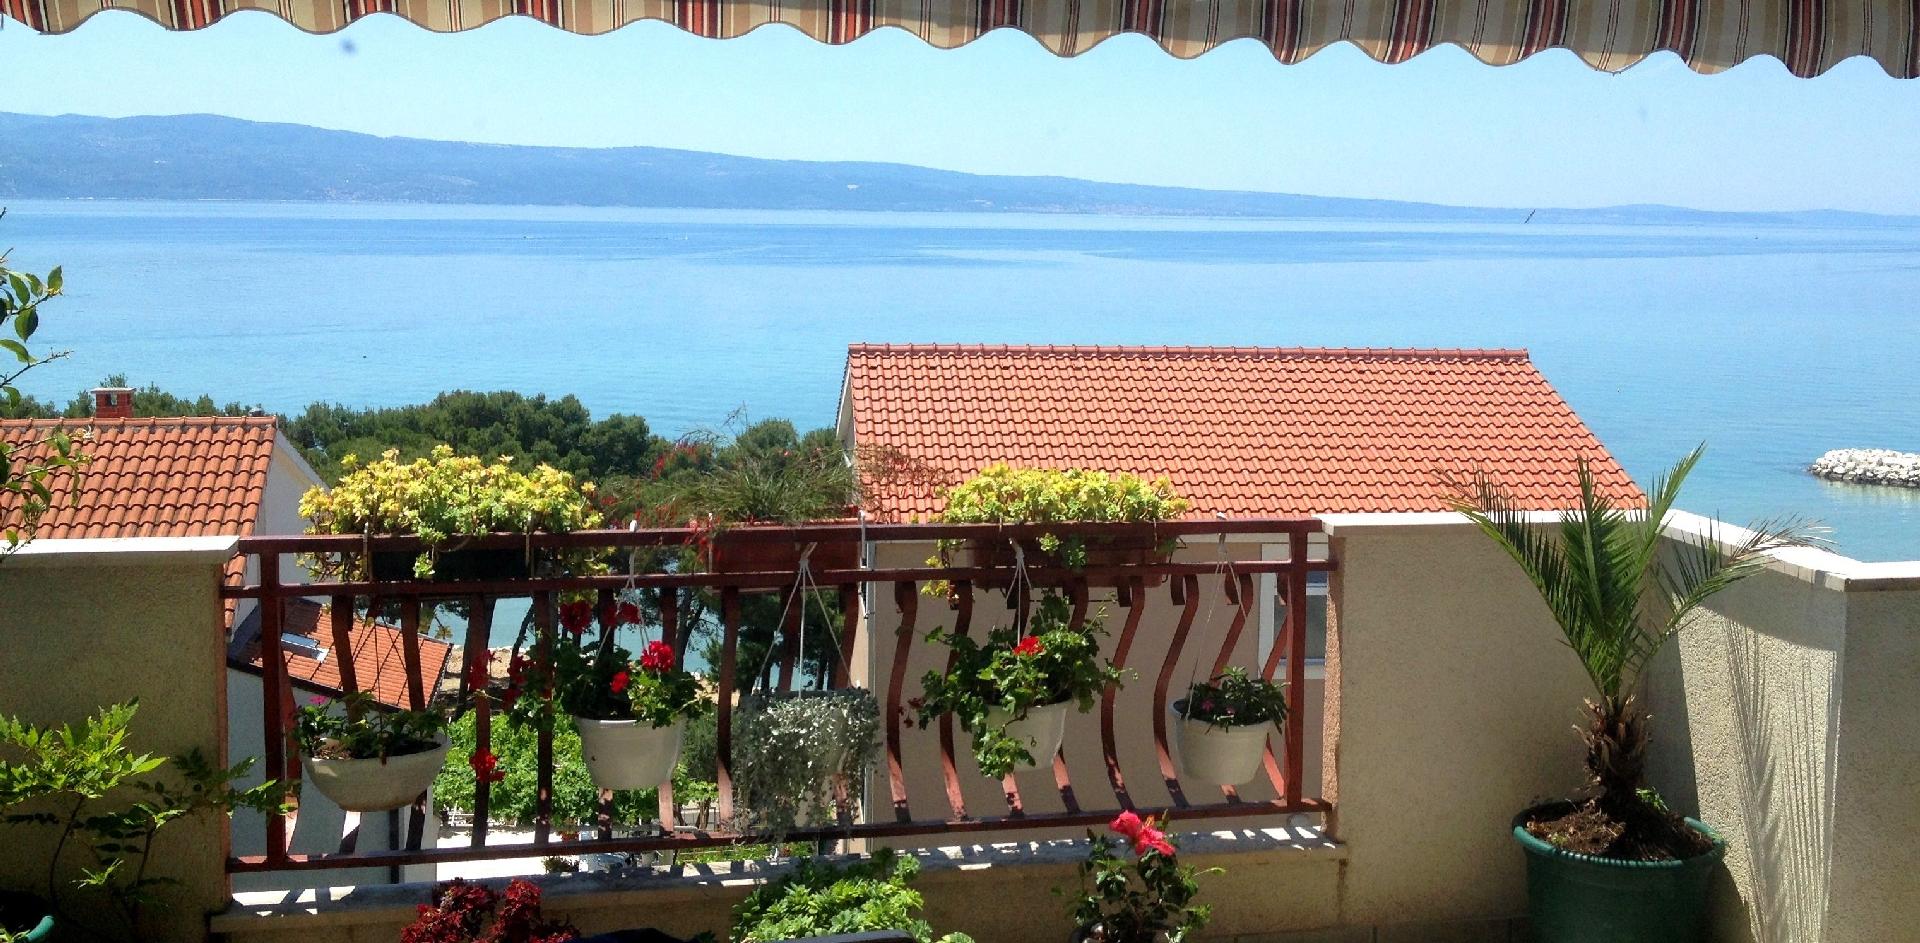 Geräumige Wohnung in Du?e mit Eigenem Balkon  Ferienwohnung in Kroatien